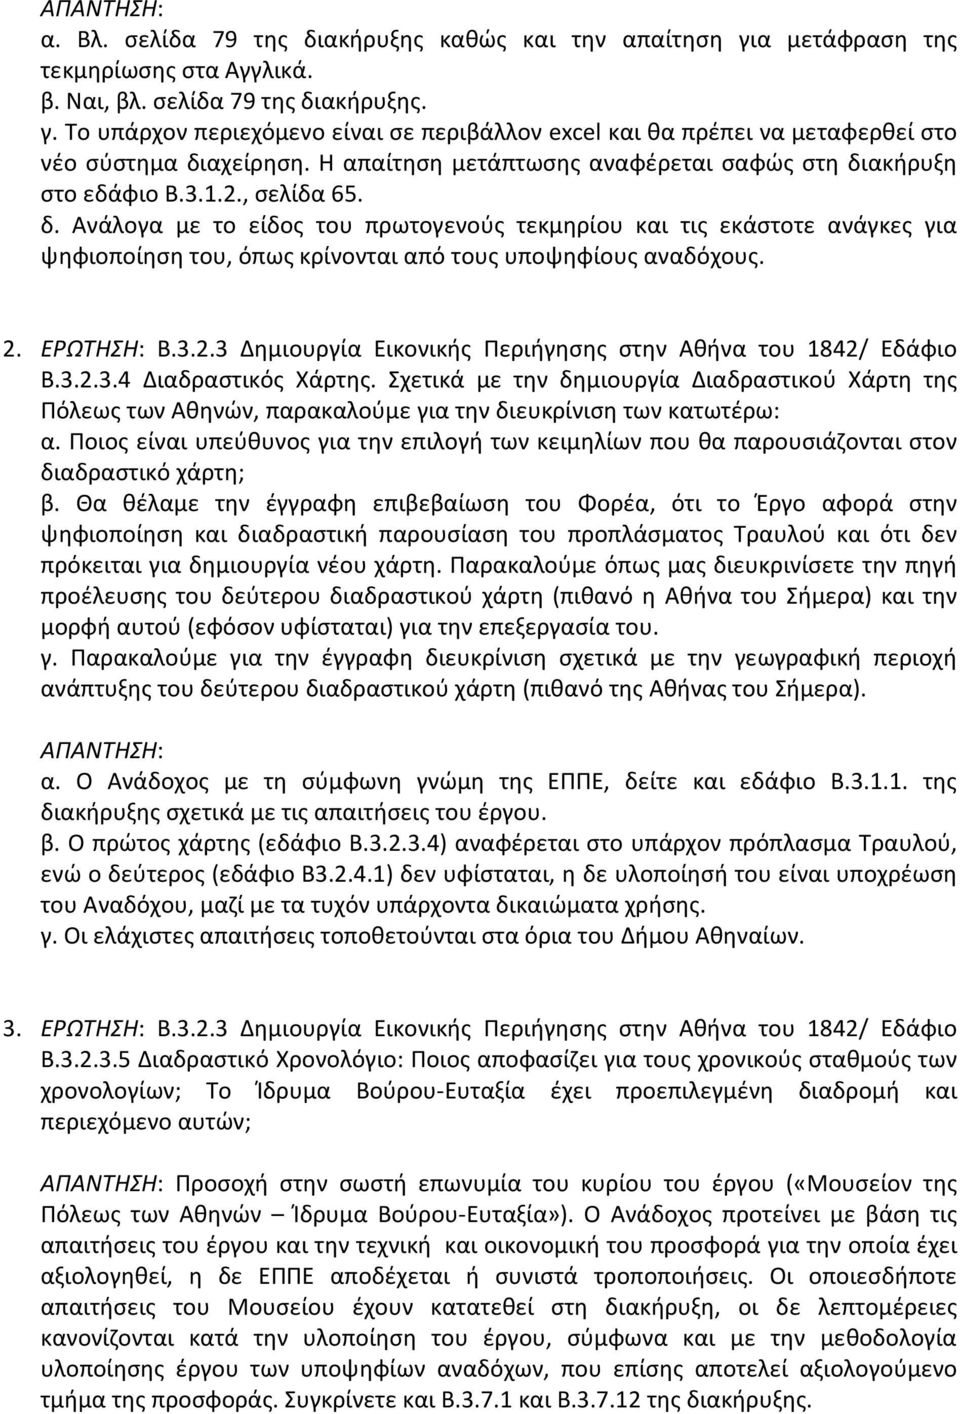 2. ΕΡΩΤΗΣΗ: Β.3.2.3 Δημιουργία Εικονικής Περιήγησης στην Αθήνα του 1842/ Εδάφιο Β.3.2.3.4 Διαδραστικός Χάρτης.